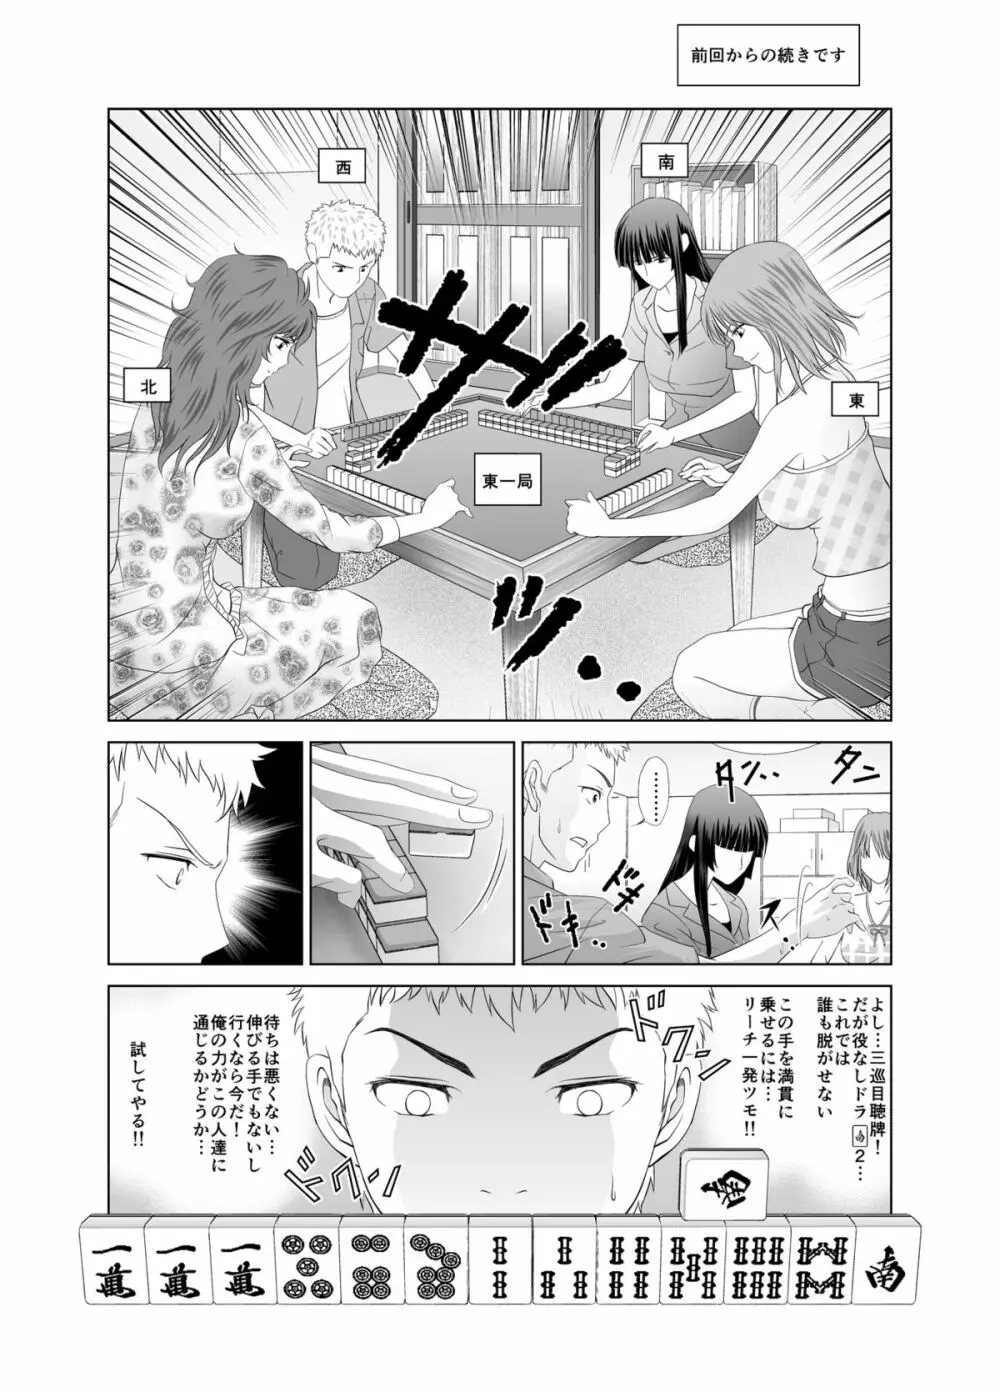 脱衣麻雀～漫画編～【完成版】 13ページ